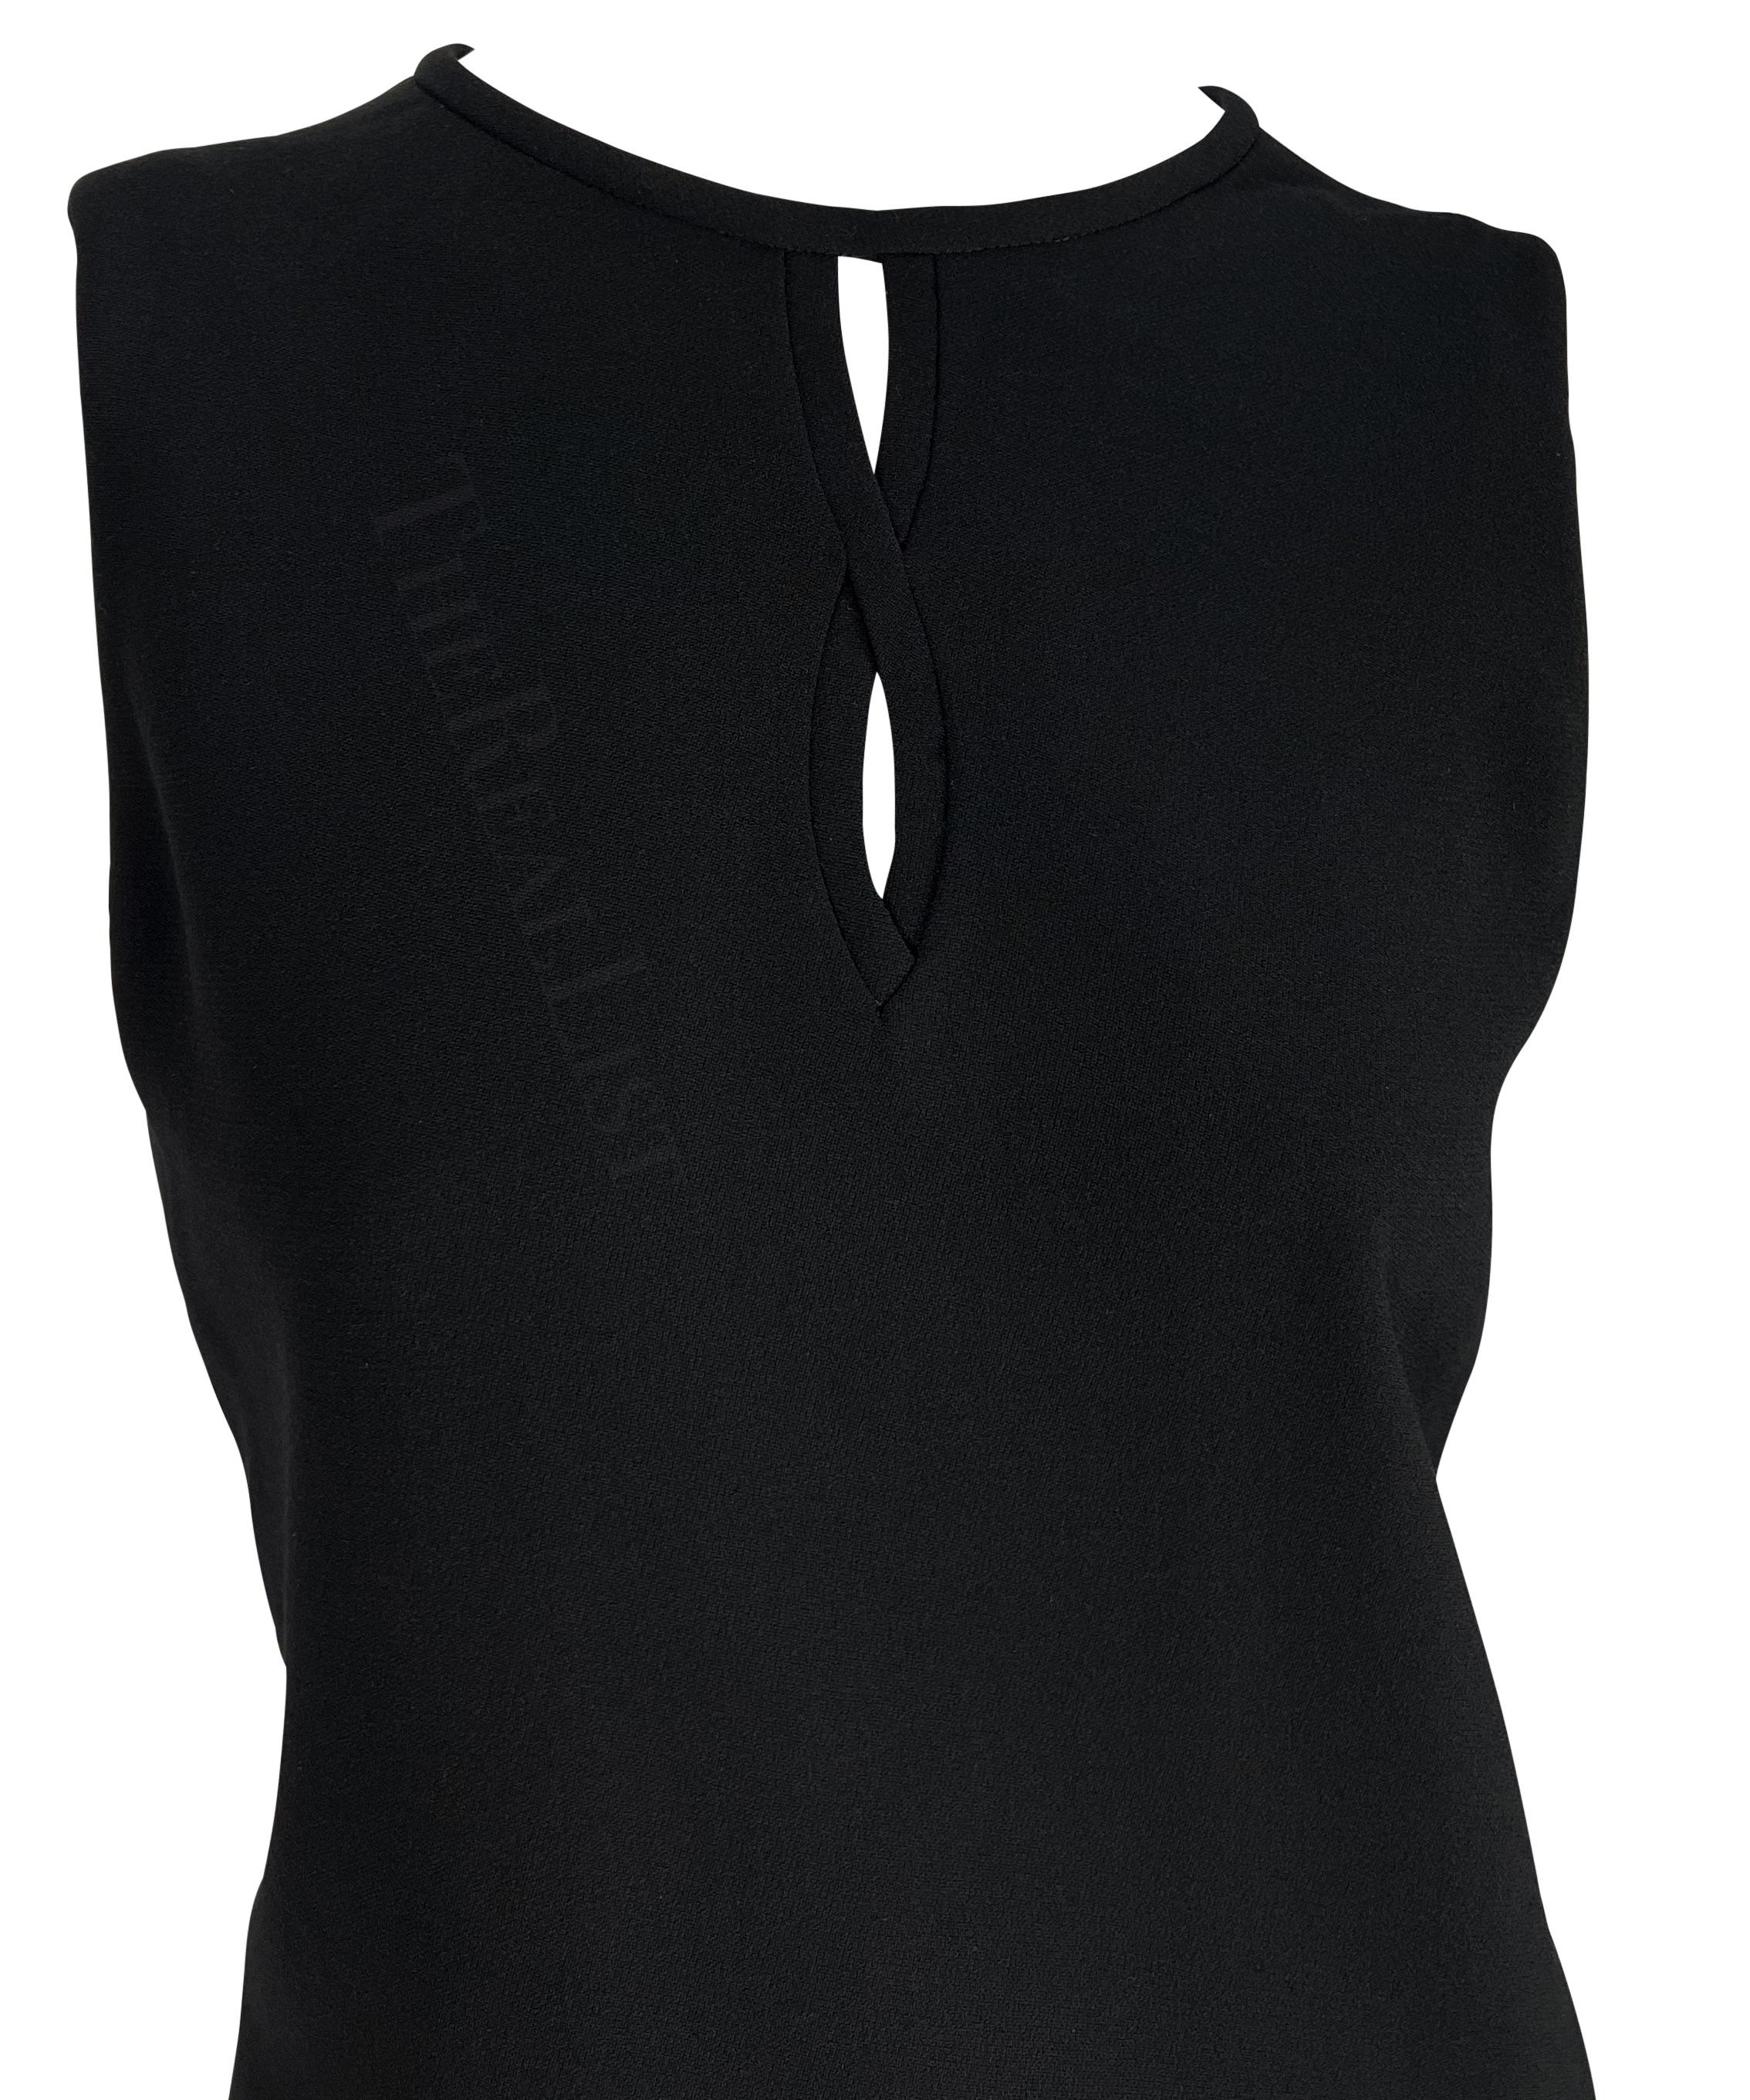 Voici une fabuleuse robe tunique noire de Gianni Versace, conçue par Gianni Versace. Issu de la collection automne-hiver 1997, ce LBD chic sans manches présente une encolure ras-du-cou et des découpes entre les seins. Jamais portée auparavant, cette